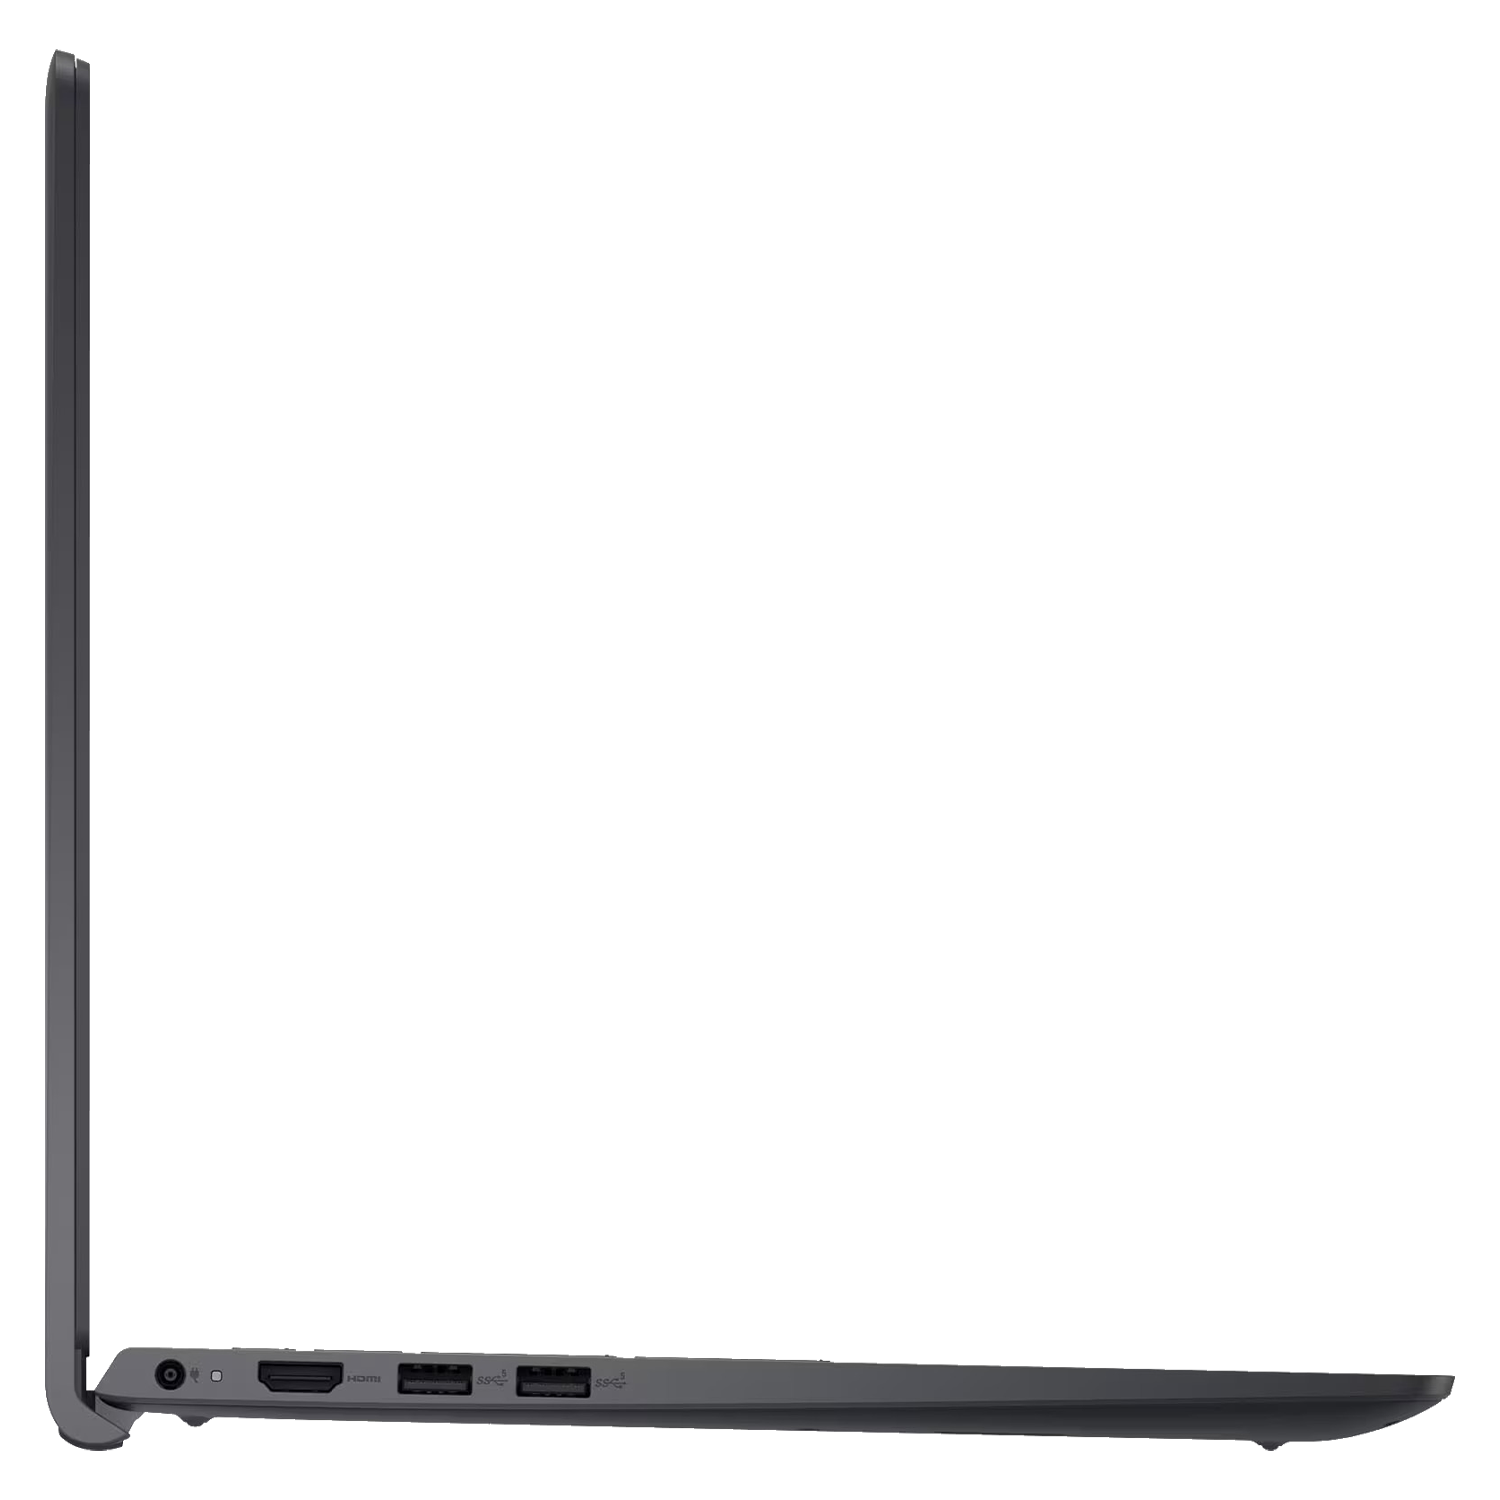 Notebook Dell Inspiron 15 I3511-5829BLK I5 2.4 8GB RAM / 256GB SSD / Tela 15.6" / Touch - Preto